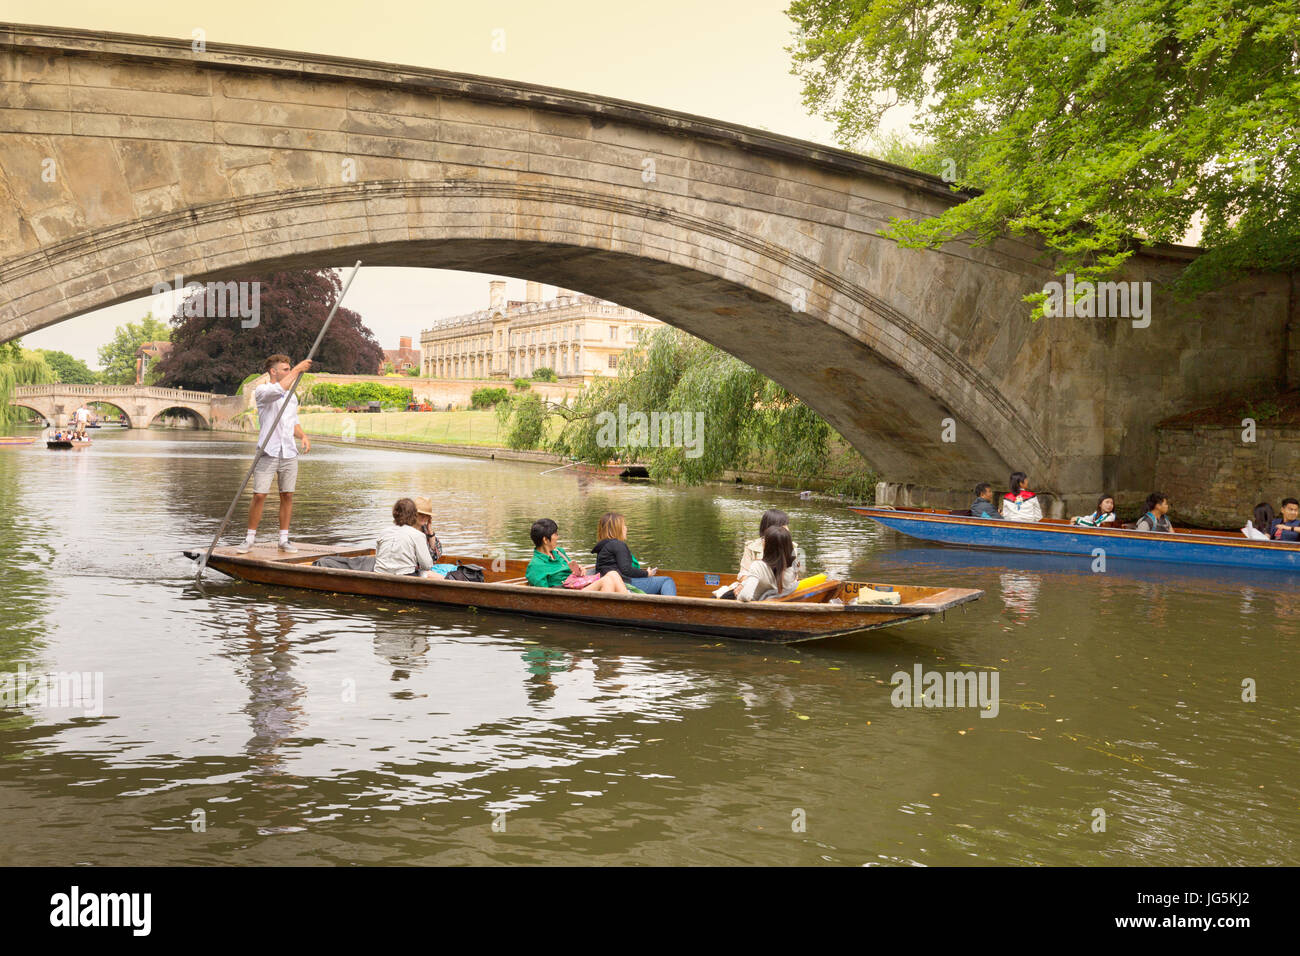 Cambridge - remar a punt pasa por debajo del puente de Reyes, con Clare College en el fondo; Río Cam, Cambridge, Inglaterra Foto de stock